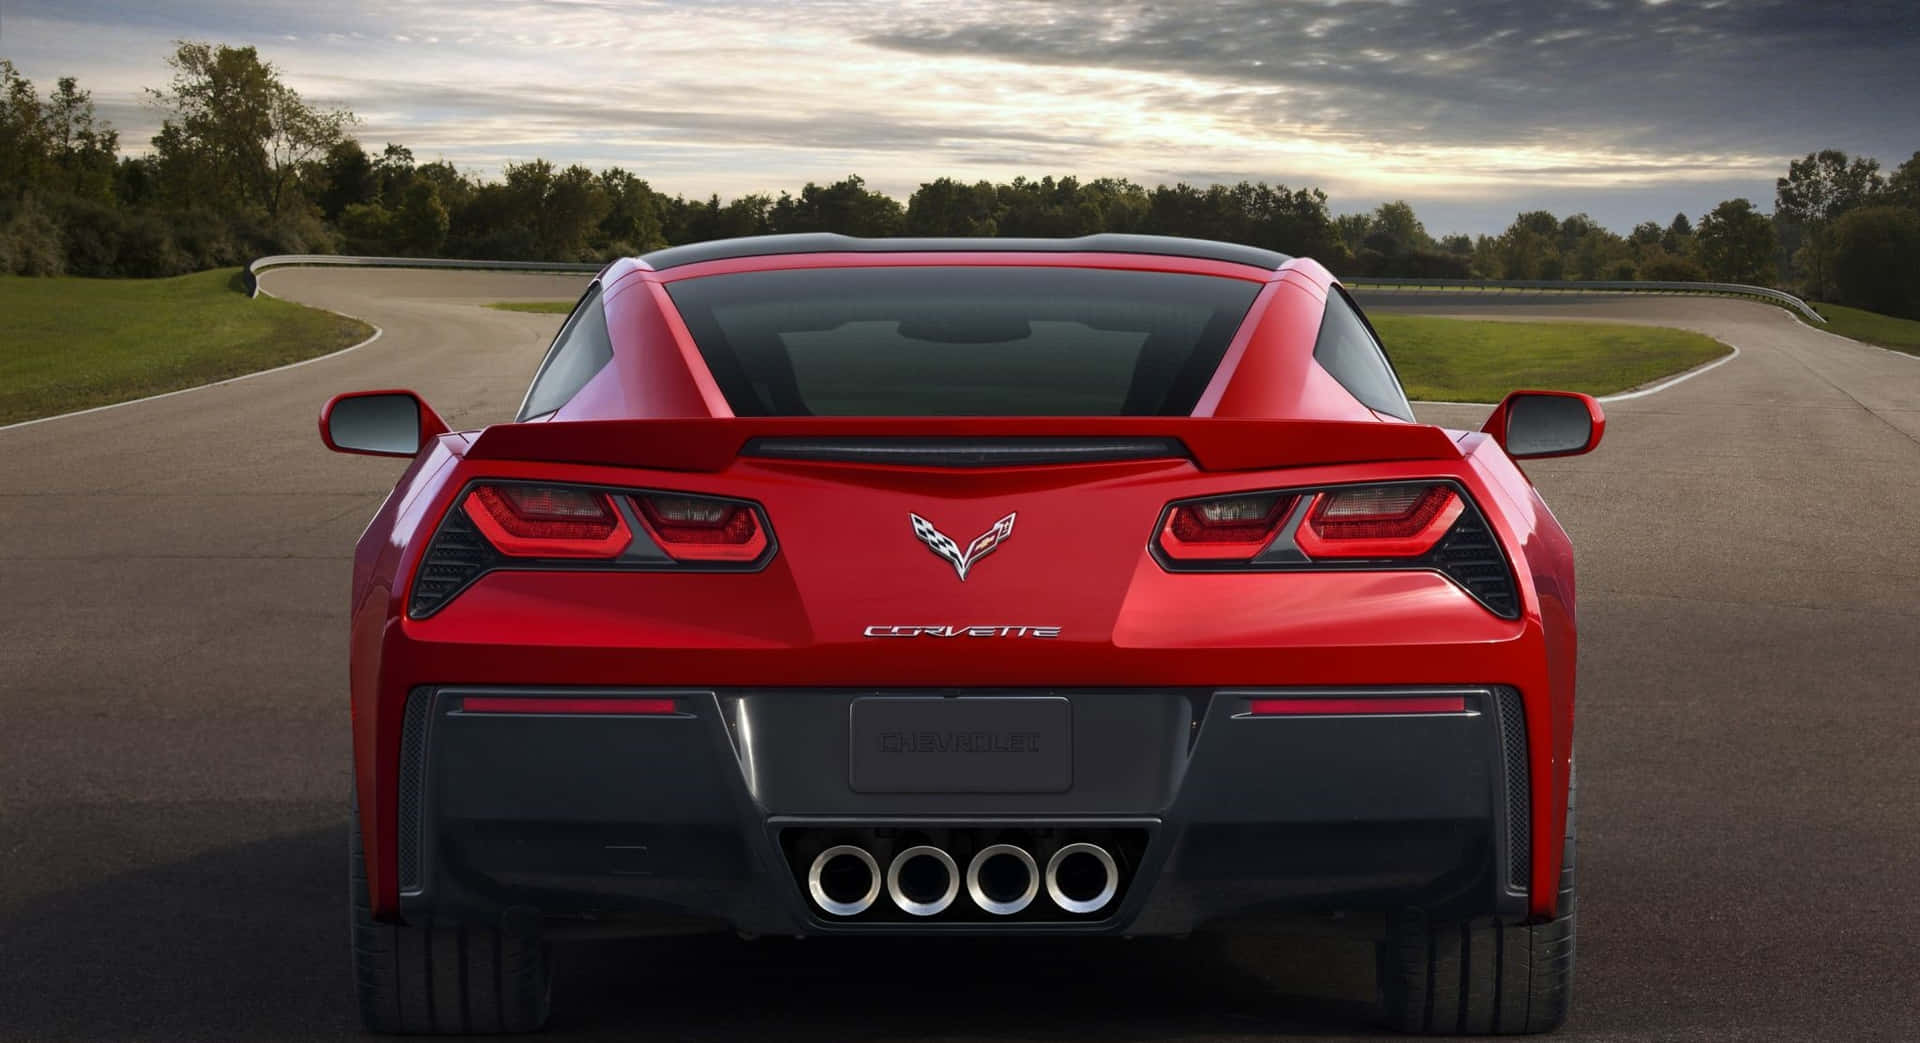 A stunning Chevrolet Corvette Stingray on the open road Wallpaper